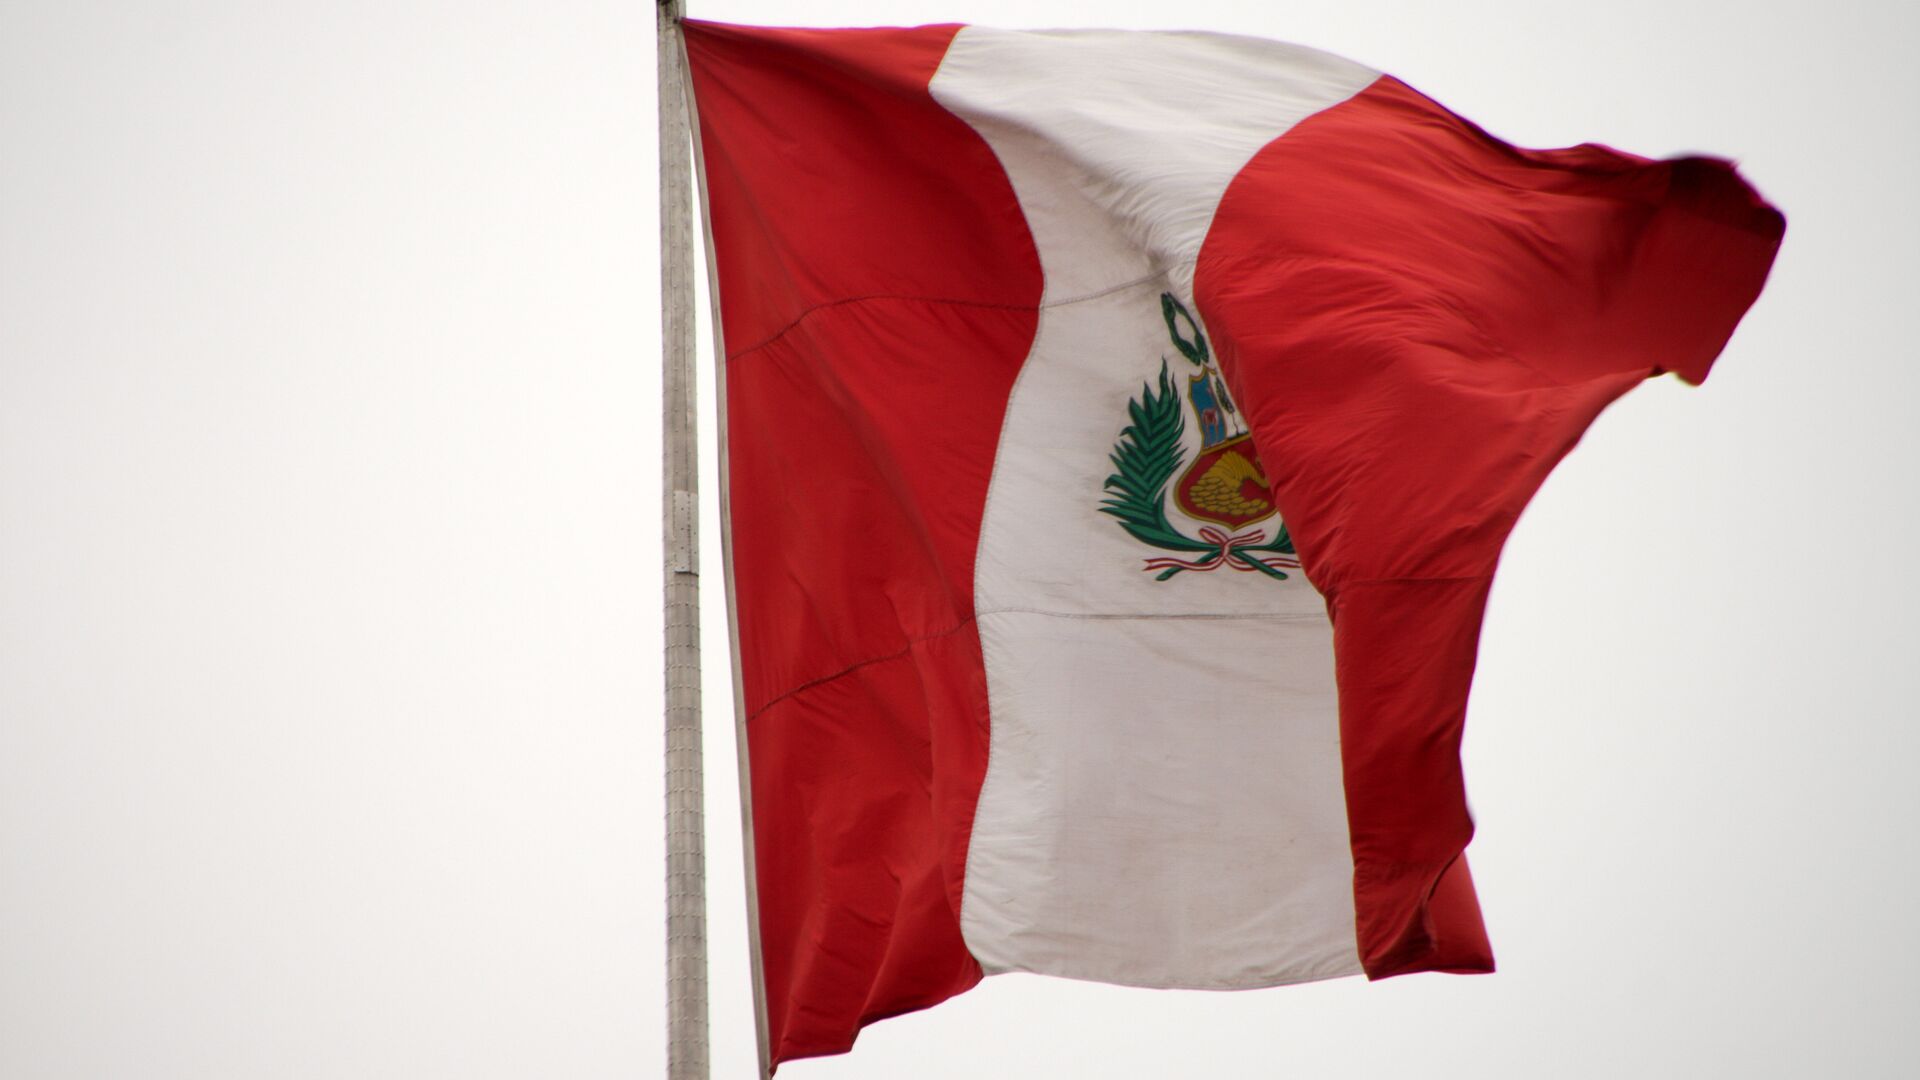 La bandera de Perú - Sputnik Mundo, 1920, 06.08.2021